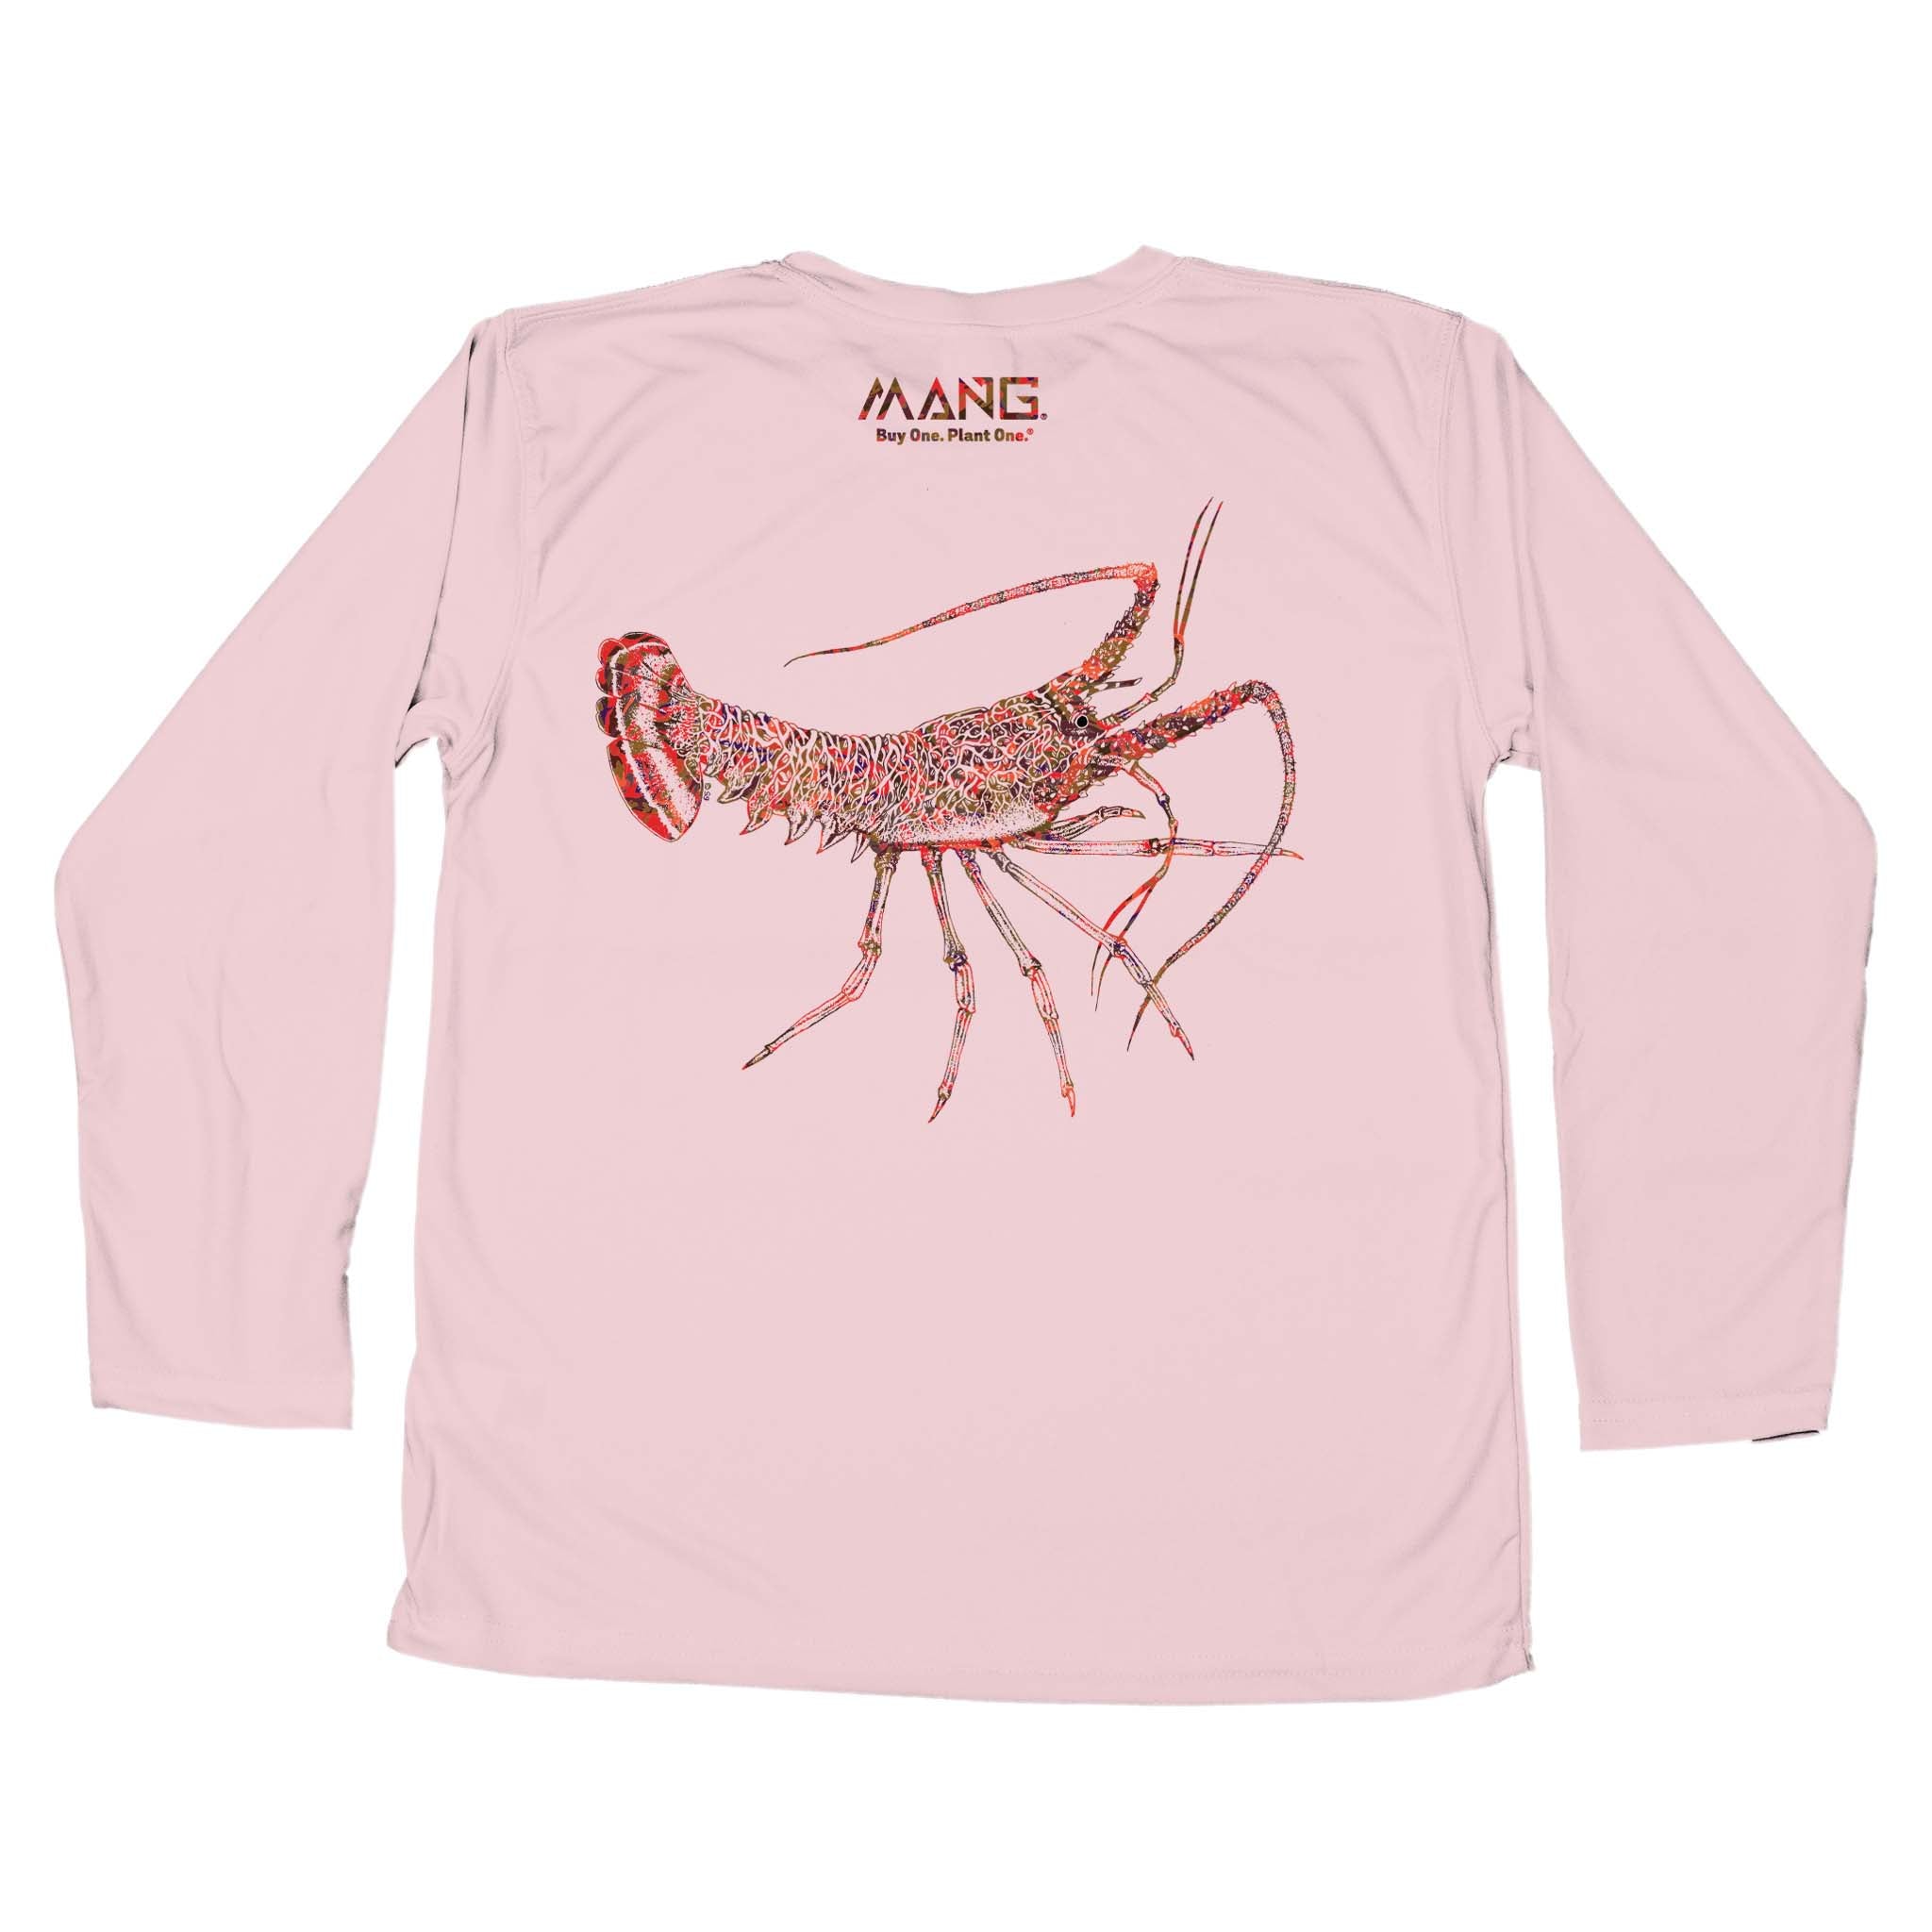 MANG Lobster MANG - Youth - YS-Pink